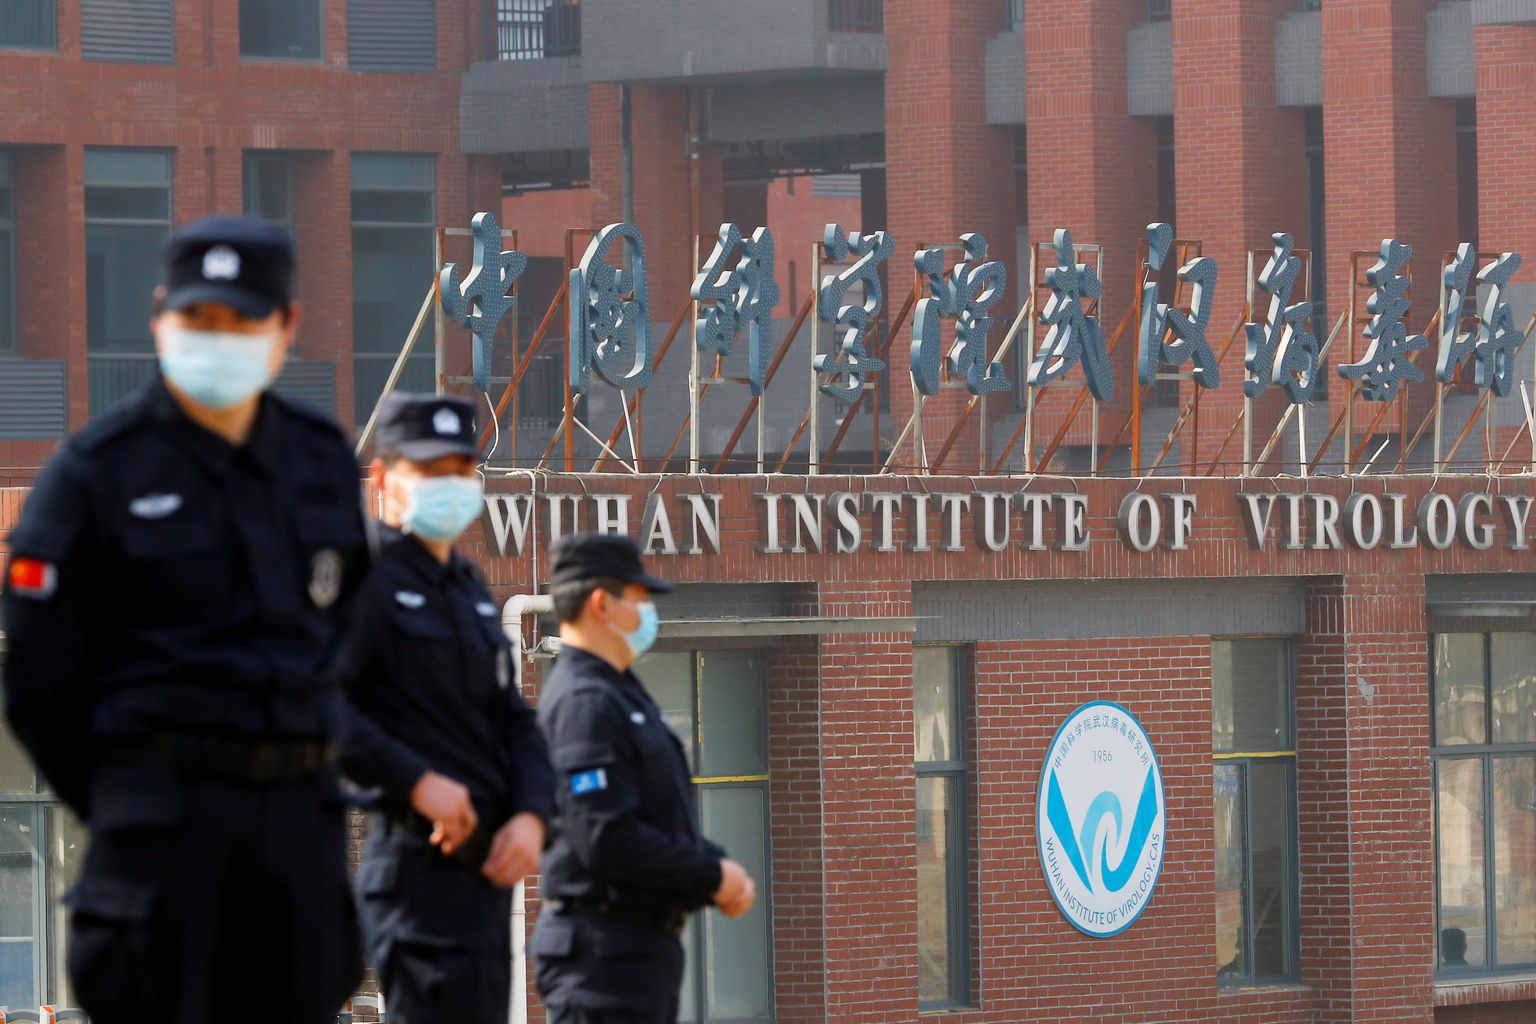 Hiina Wuhani viroloogiainstituudi peahoone. WHO eksperdid külastasid selle aasta veebruaris Wuhani, et uurida, kuidas võis koroonaviirus levima hakata